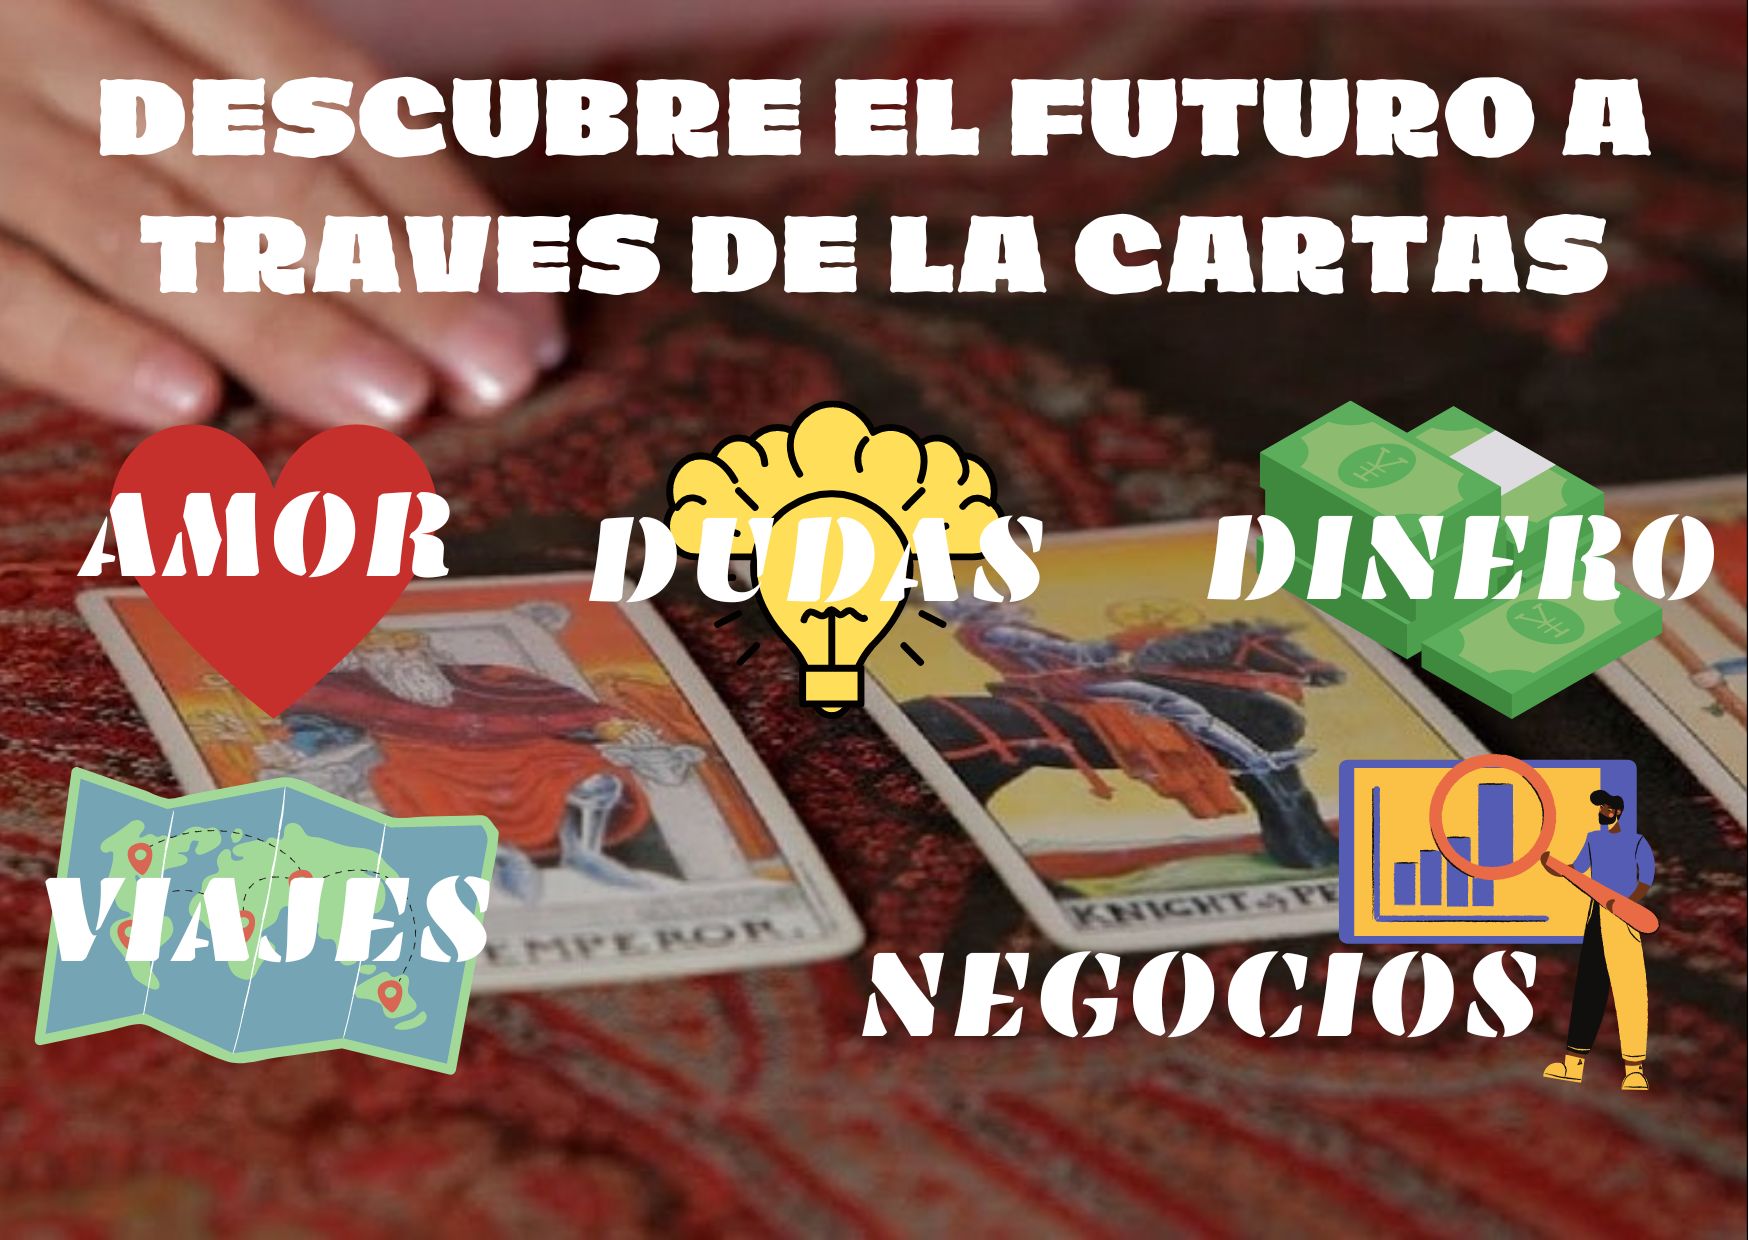 DESCUBRE EL FUTURO A TRAVES DE LA CARTAS